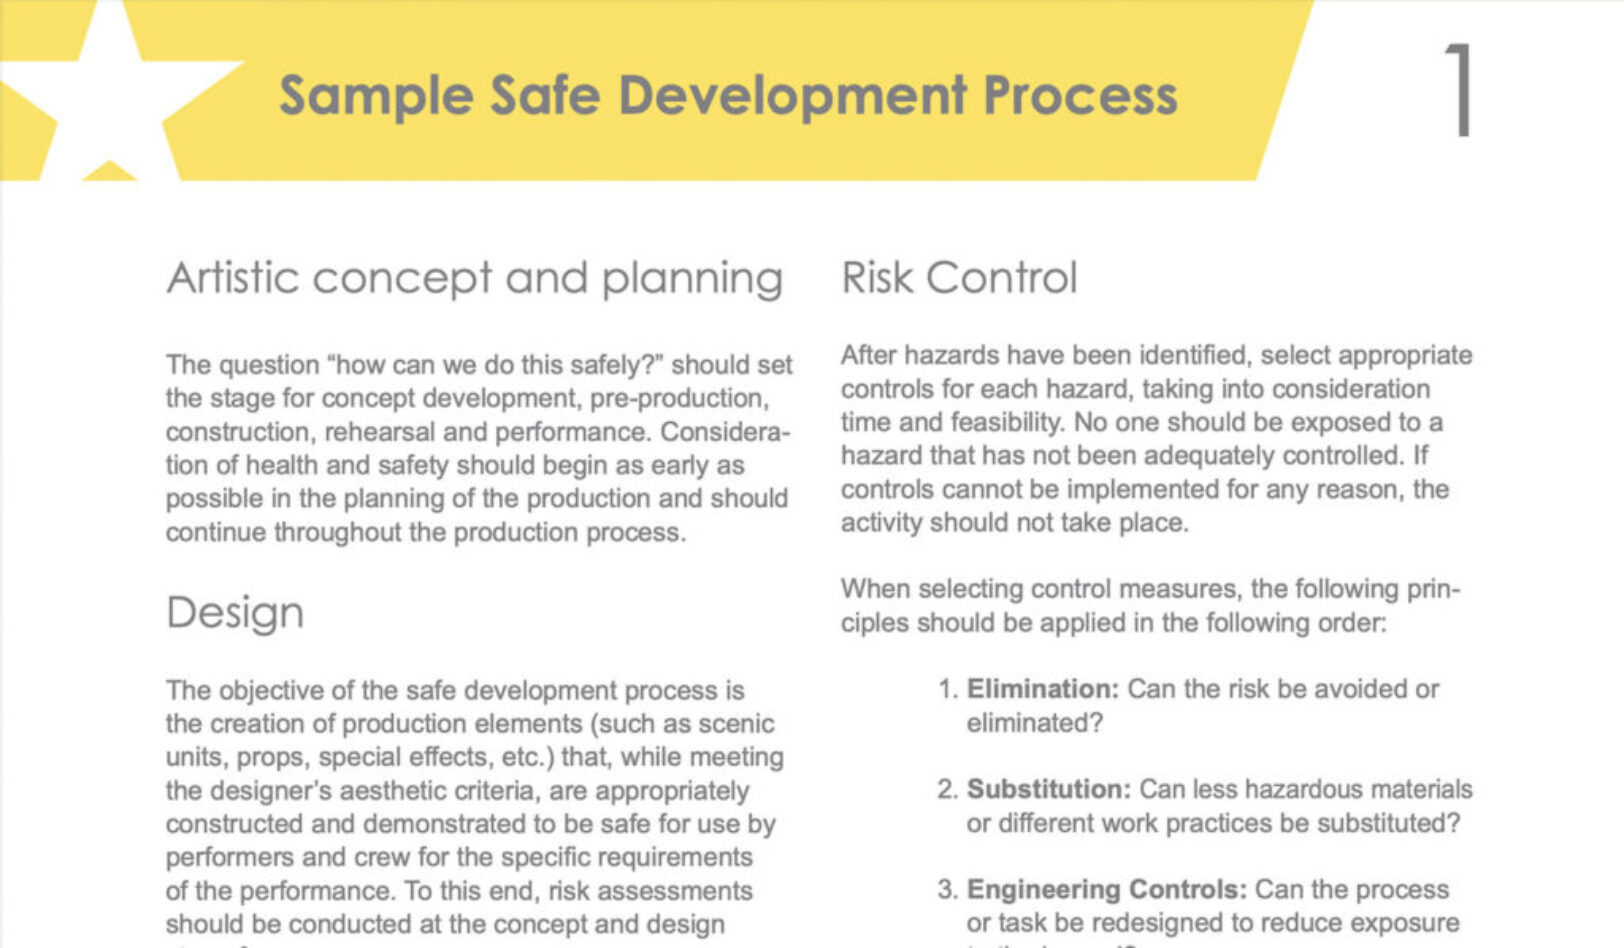 Sample Safe Development Process Info Sheet